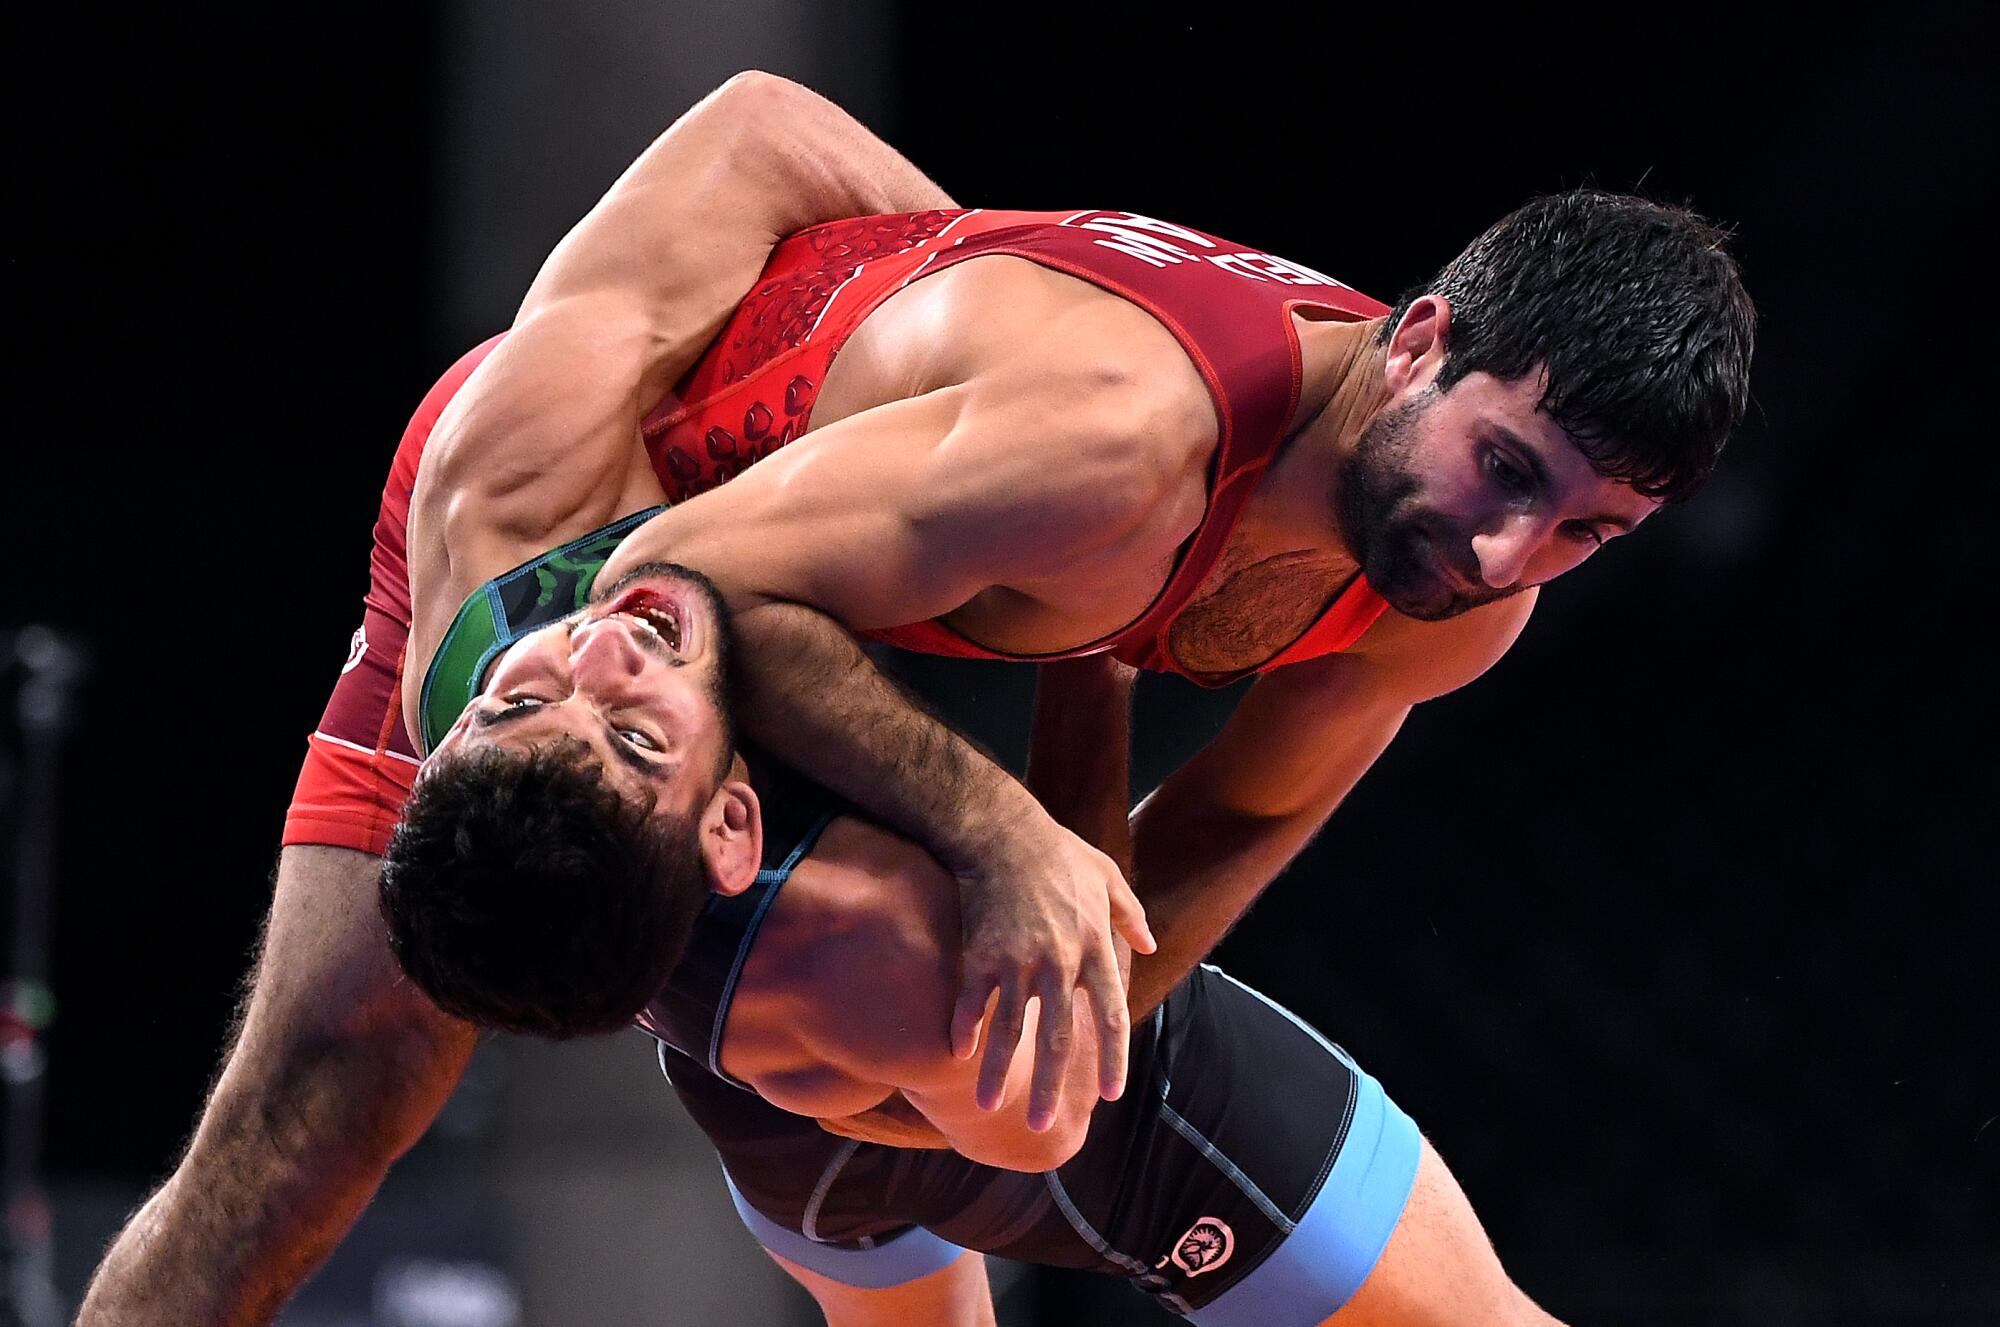 Armenia's Amen Melikyan takes down Iran's Ali Nejati in the 60kg